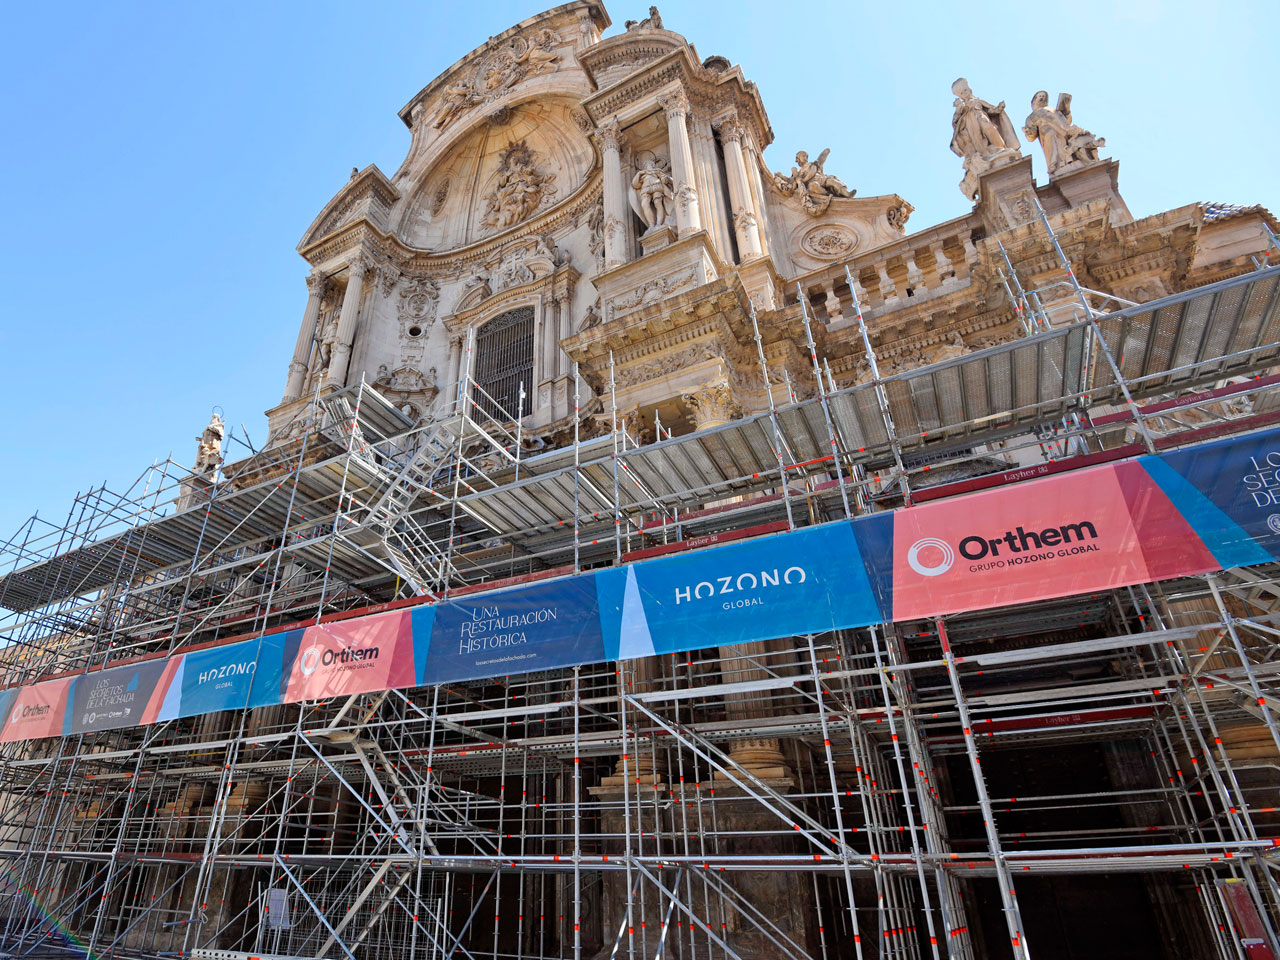 El andamio para la restauración de la Catedral de Murcia ya cubre cerca de la mitad del imafronte